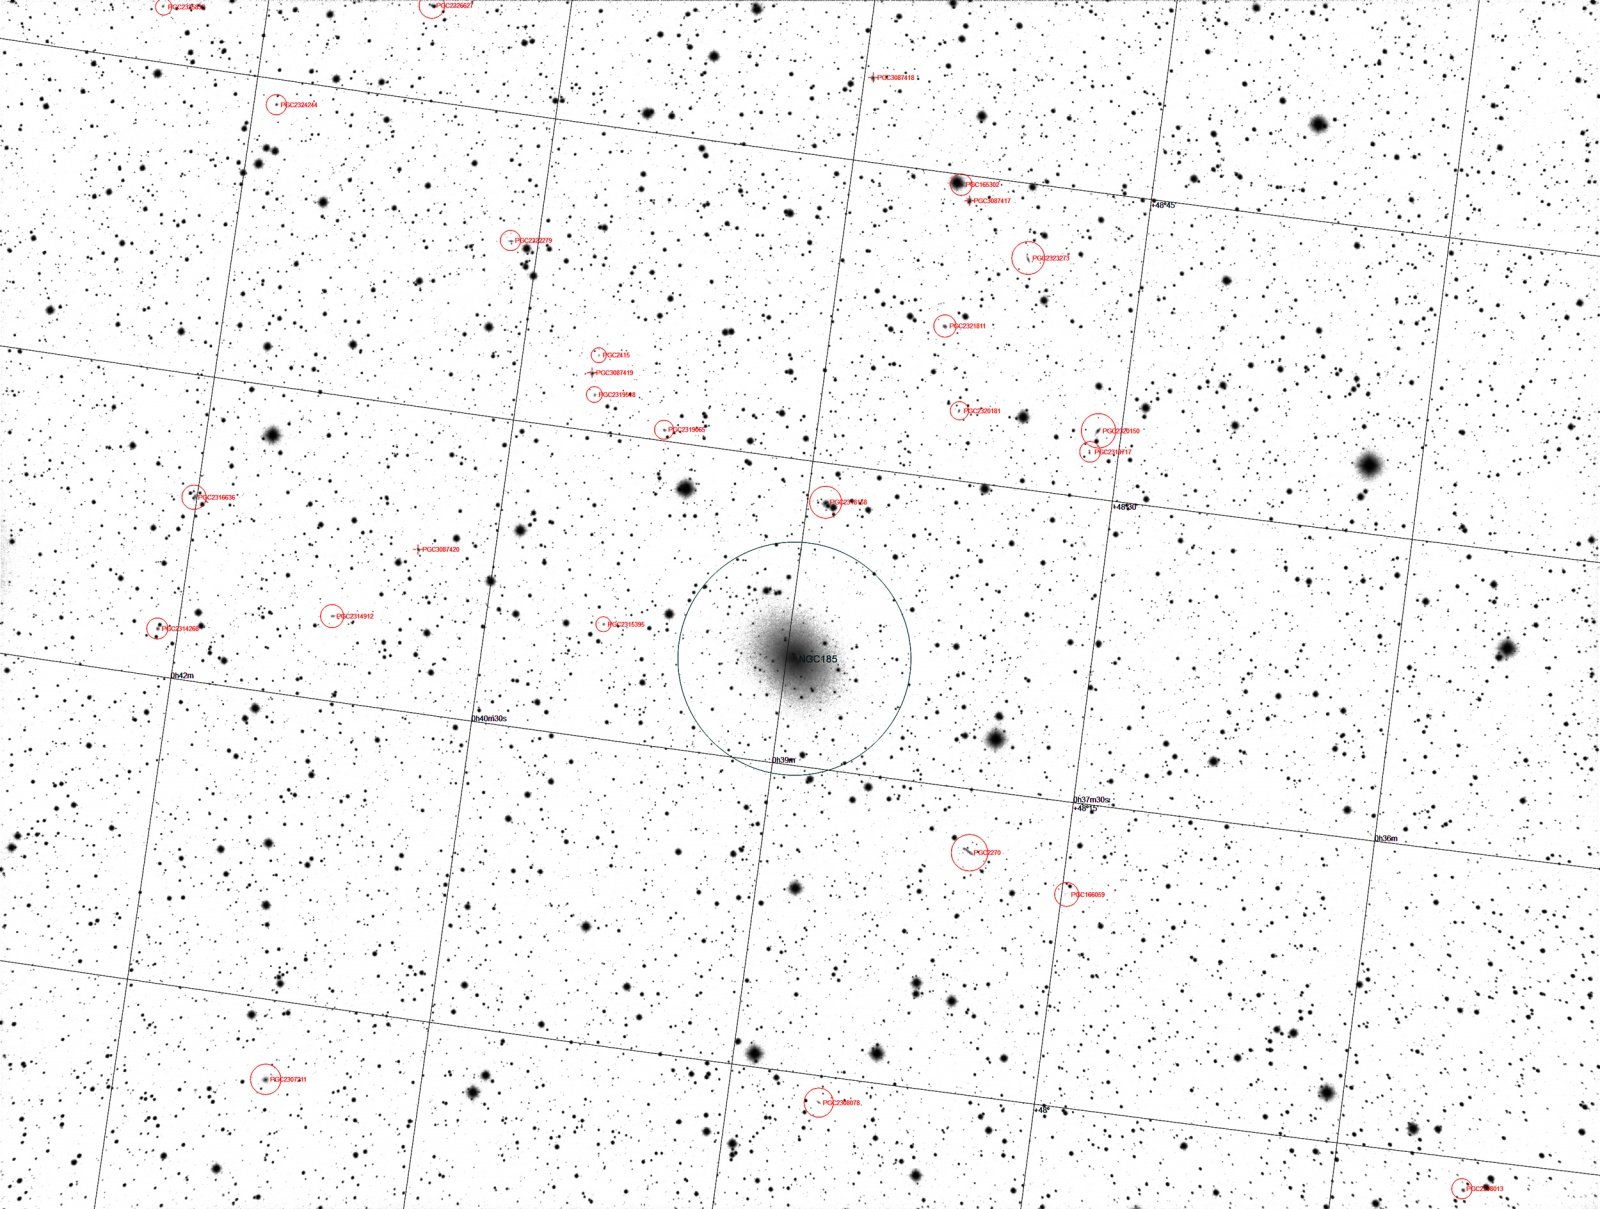 NGC185_L_Annotated.thumb.jpg.298255f6e8df4fe4c308b2dafc5aacf6.jpg